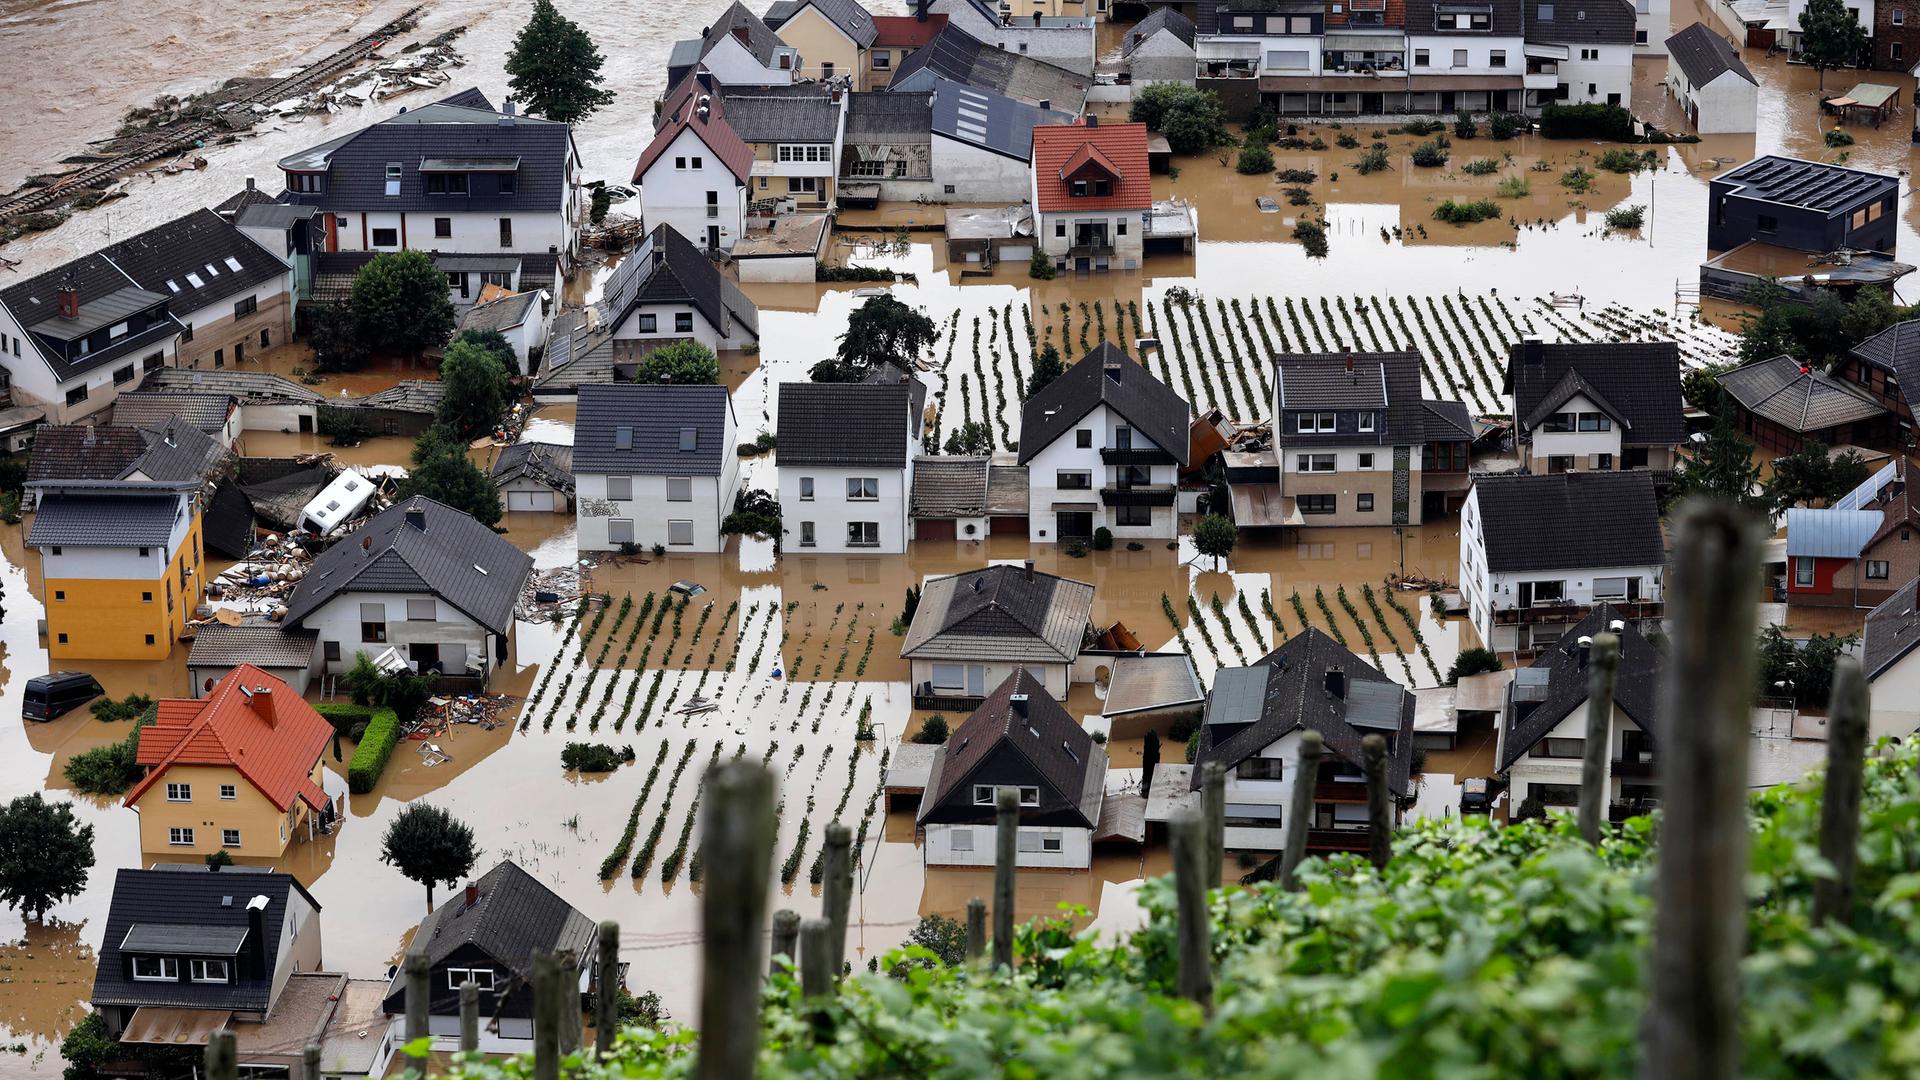 Häuser in Dernau stehen während der Flutkatastrophe unter Wasser.